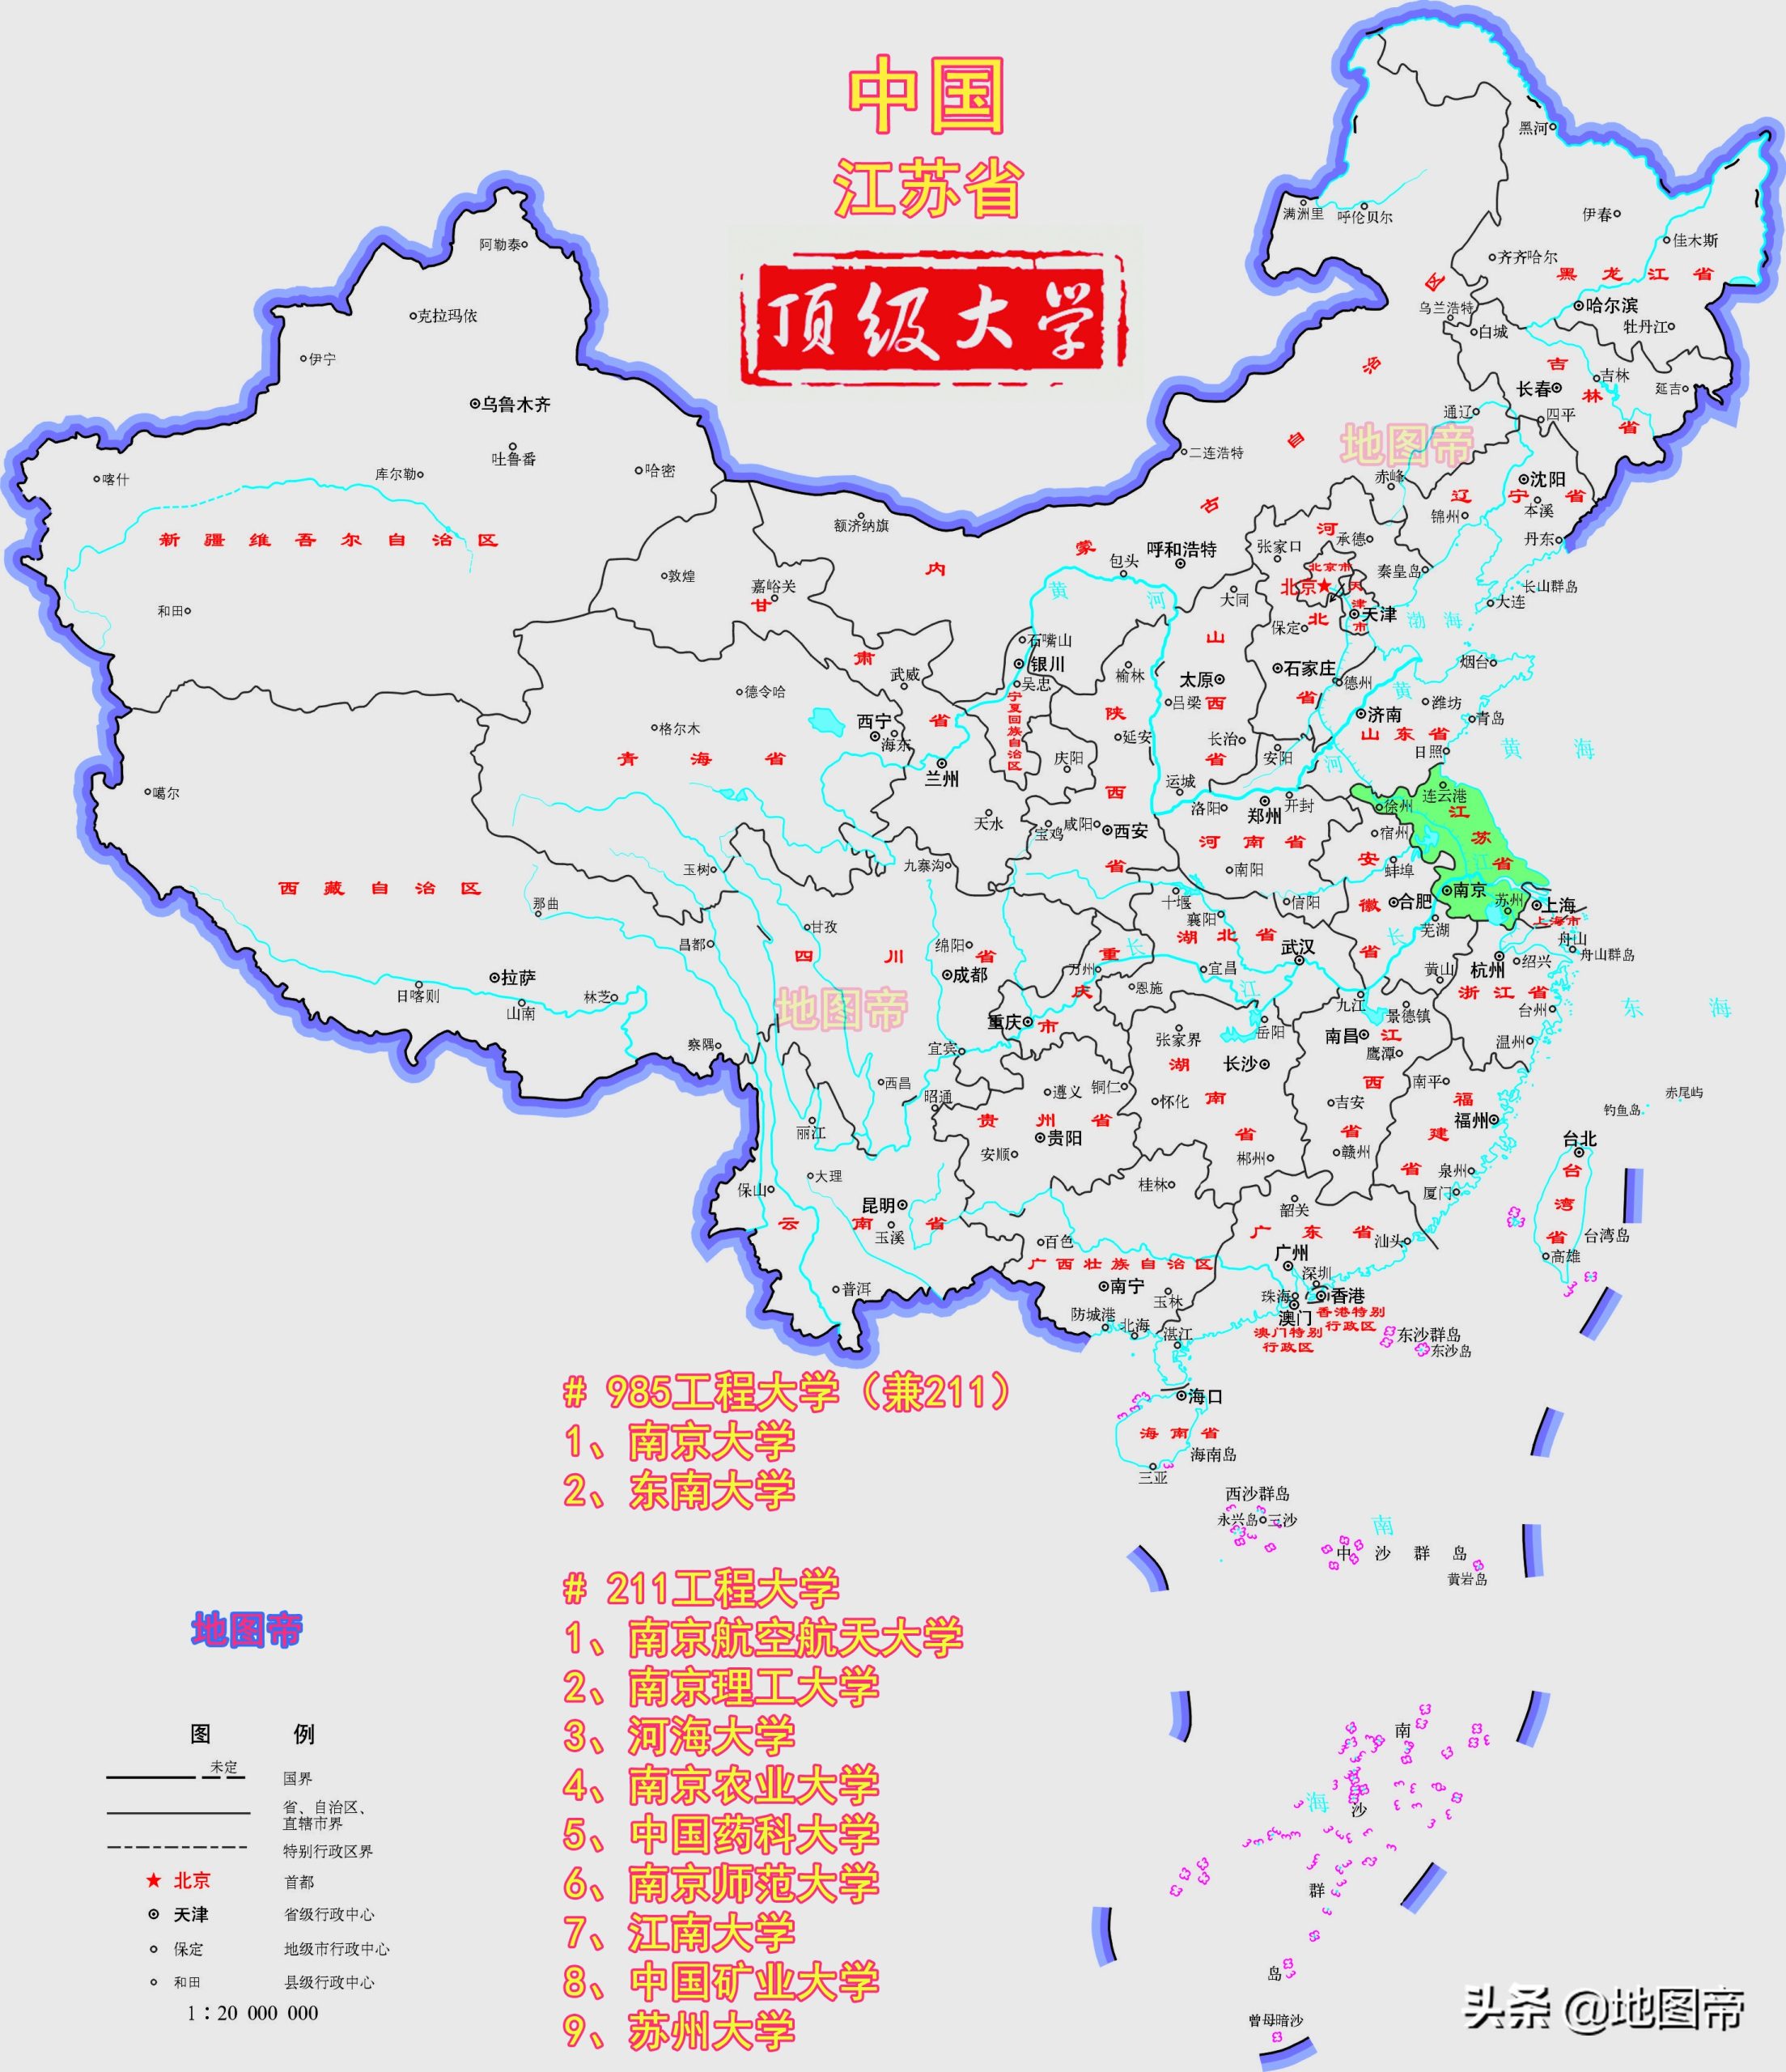 江苏211大学名单一览表(江苏省一共有多少211大学)插图11